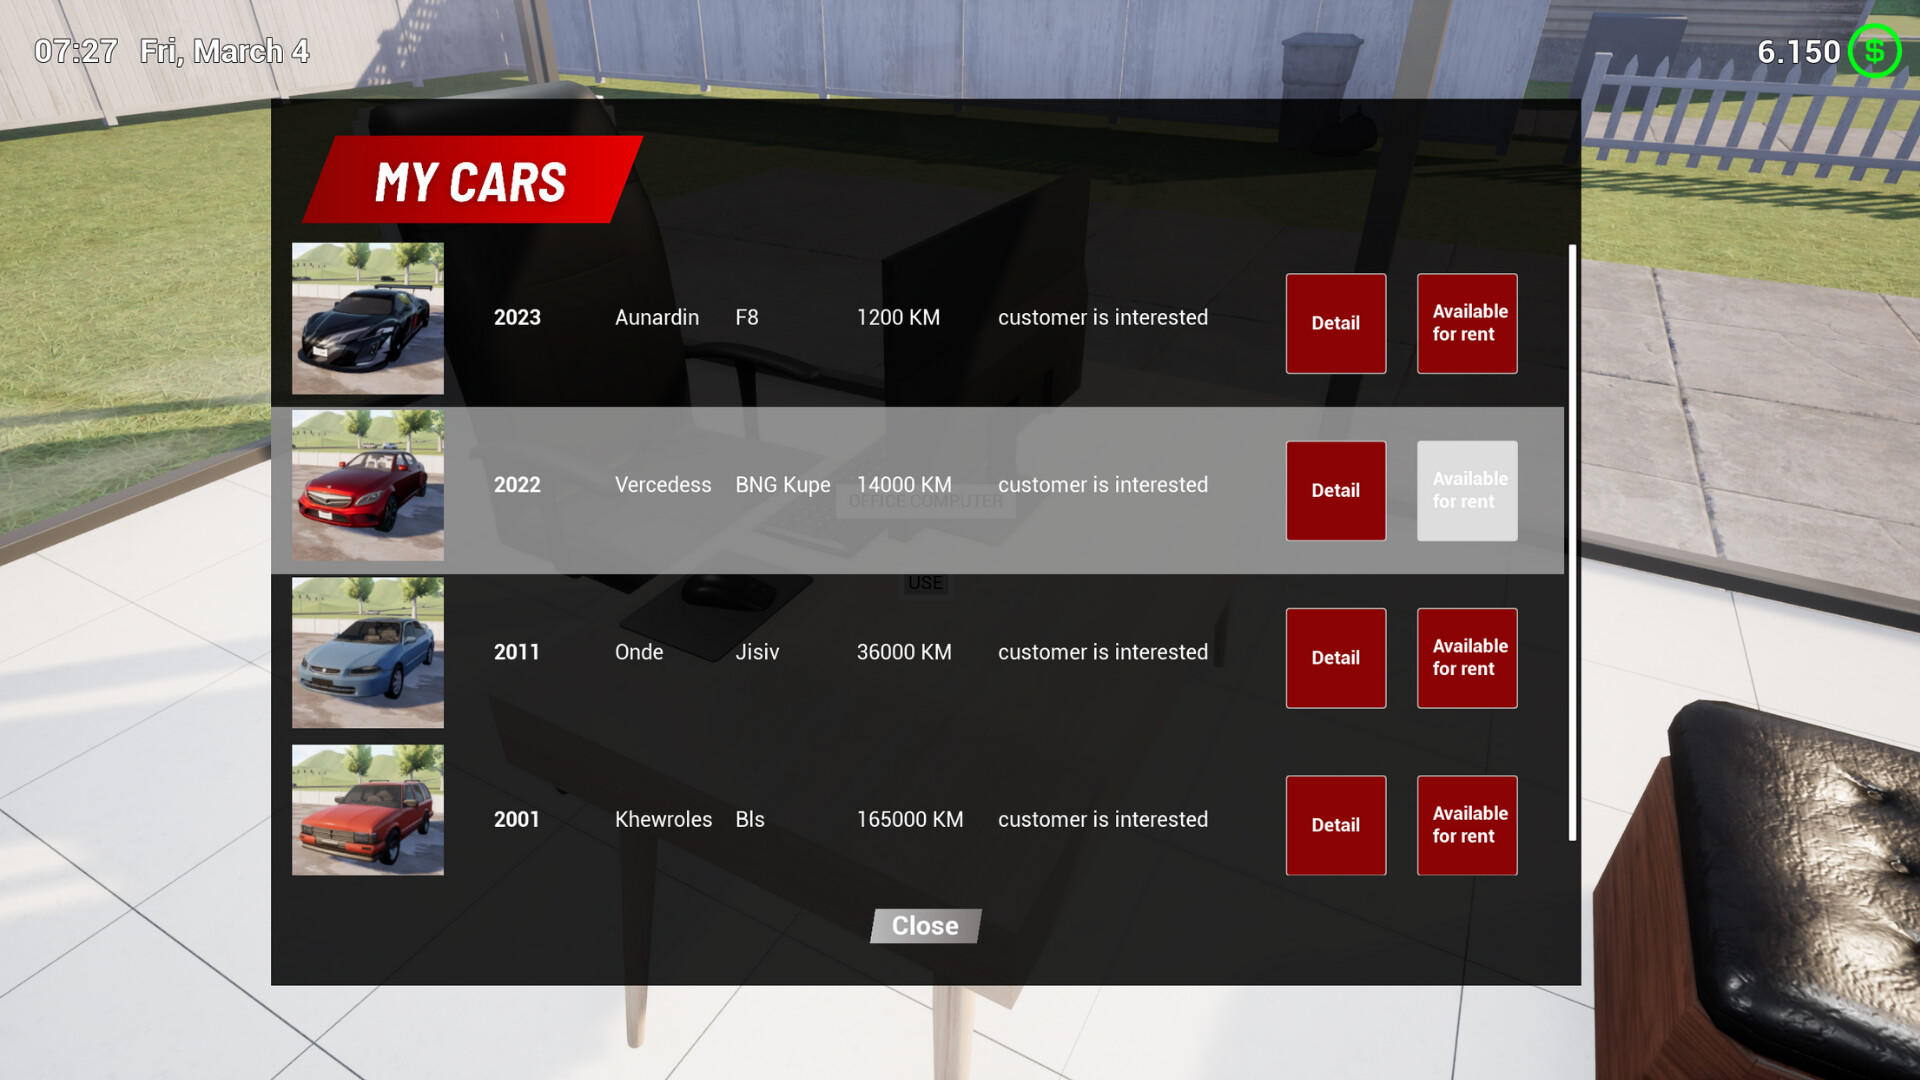 Screenshot of Rent A Car Simulator 24